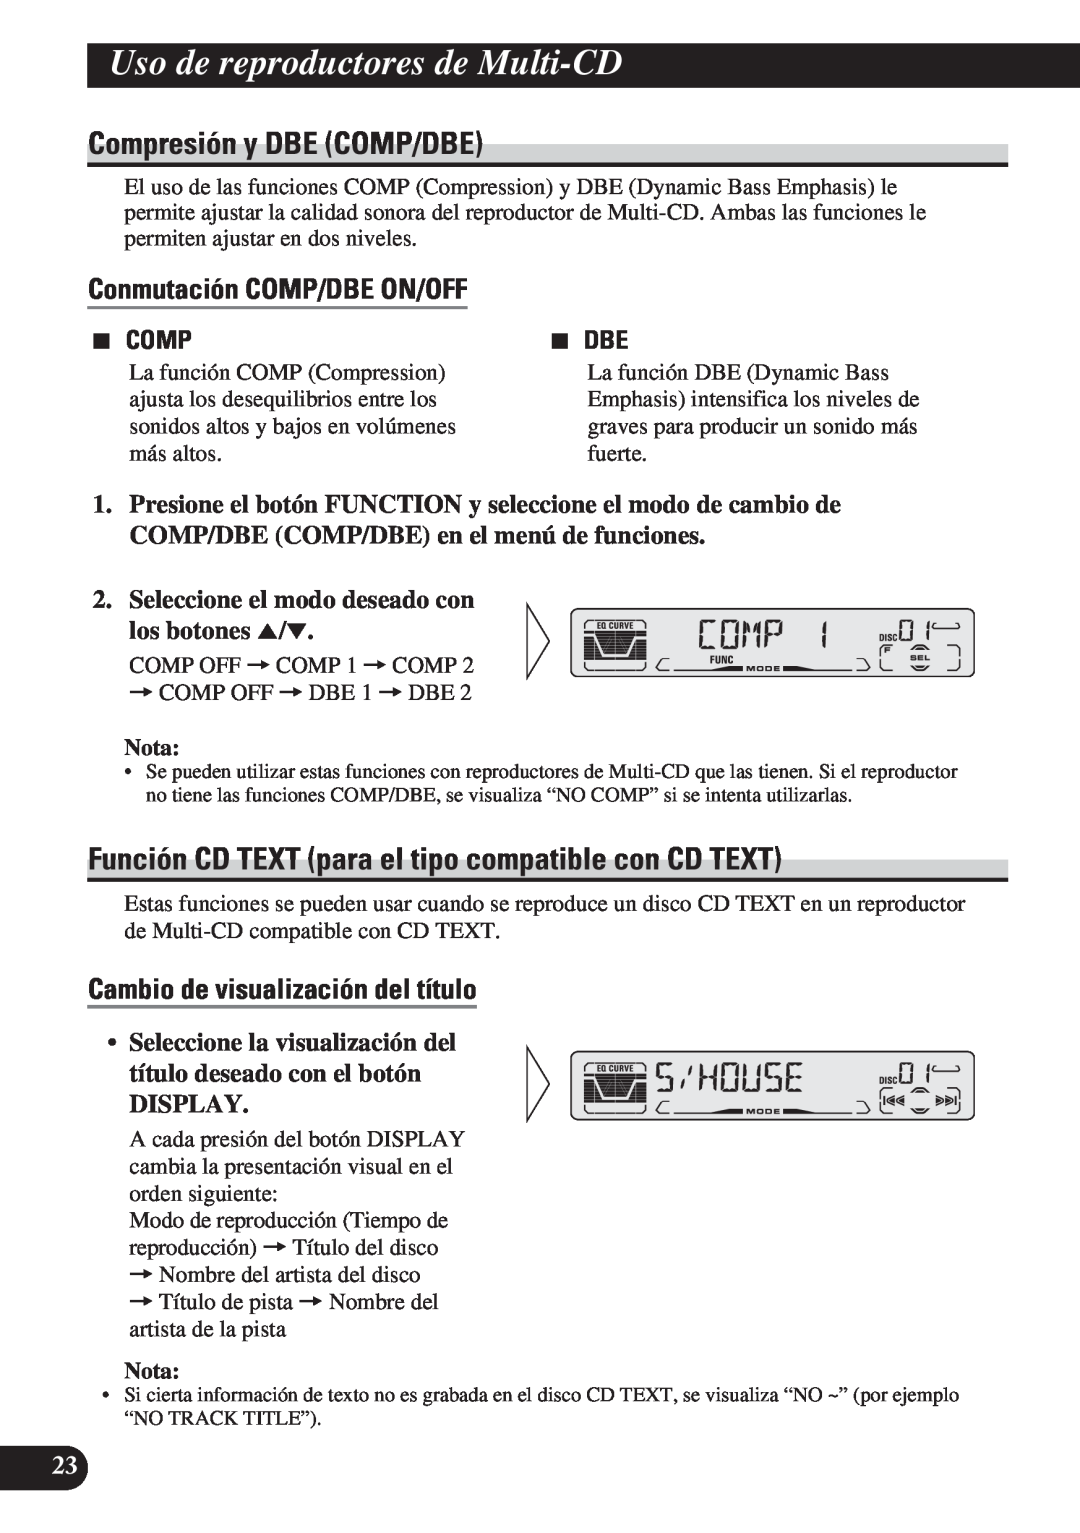 Pioneer DEH-P4150 Compresión y DBE COMP/DBE, Conmutación COMP/DBE ON/OFF, Cambio de visualización del título, Display 